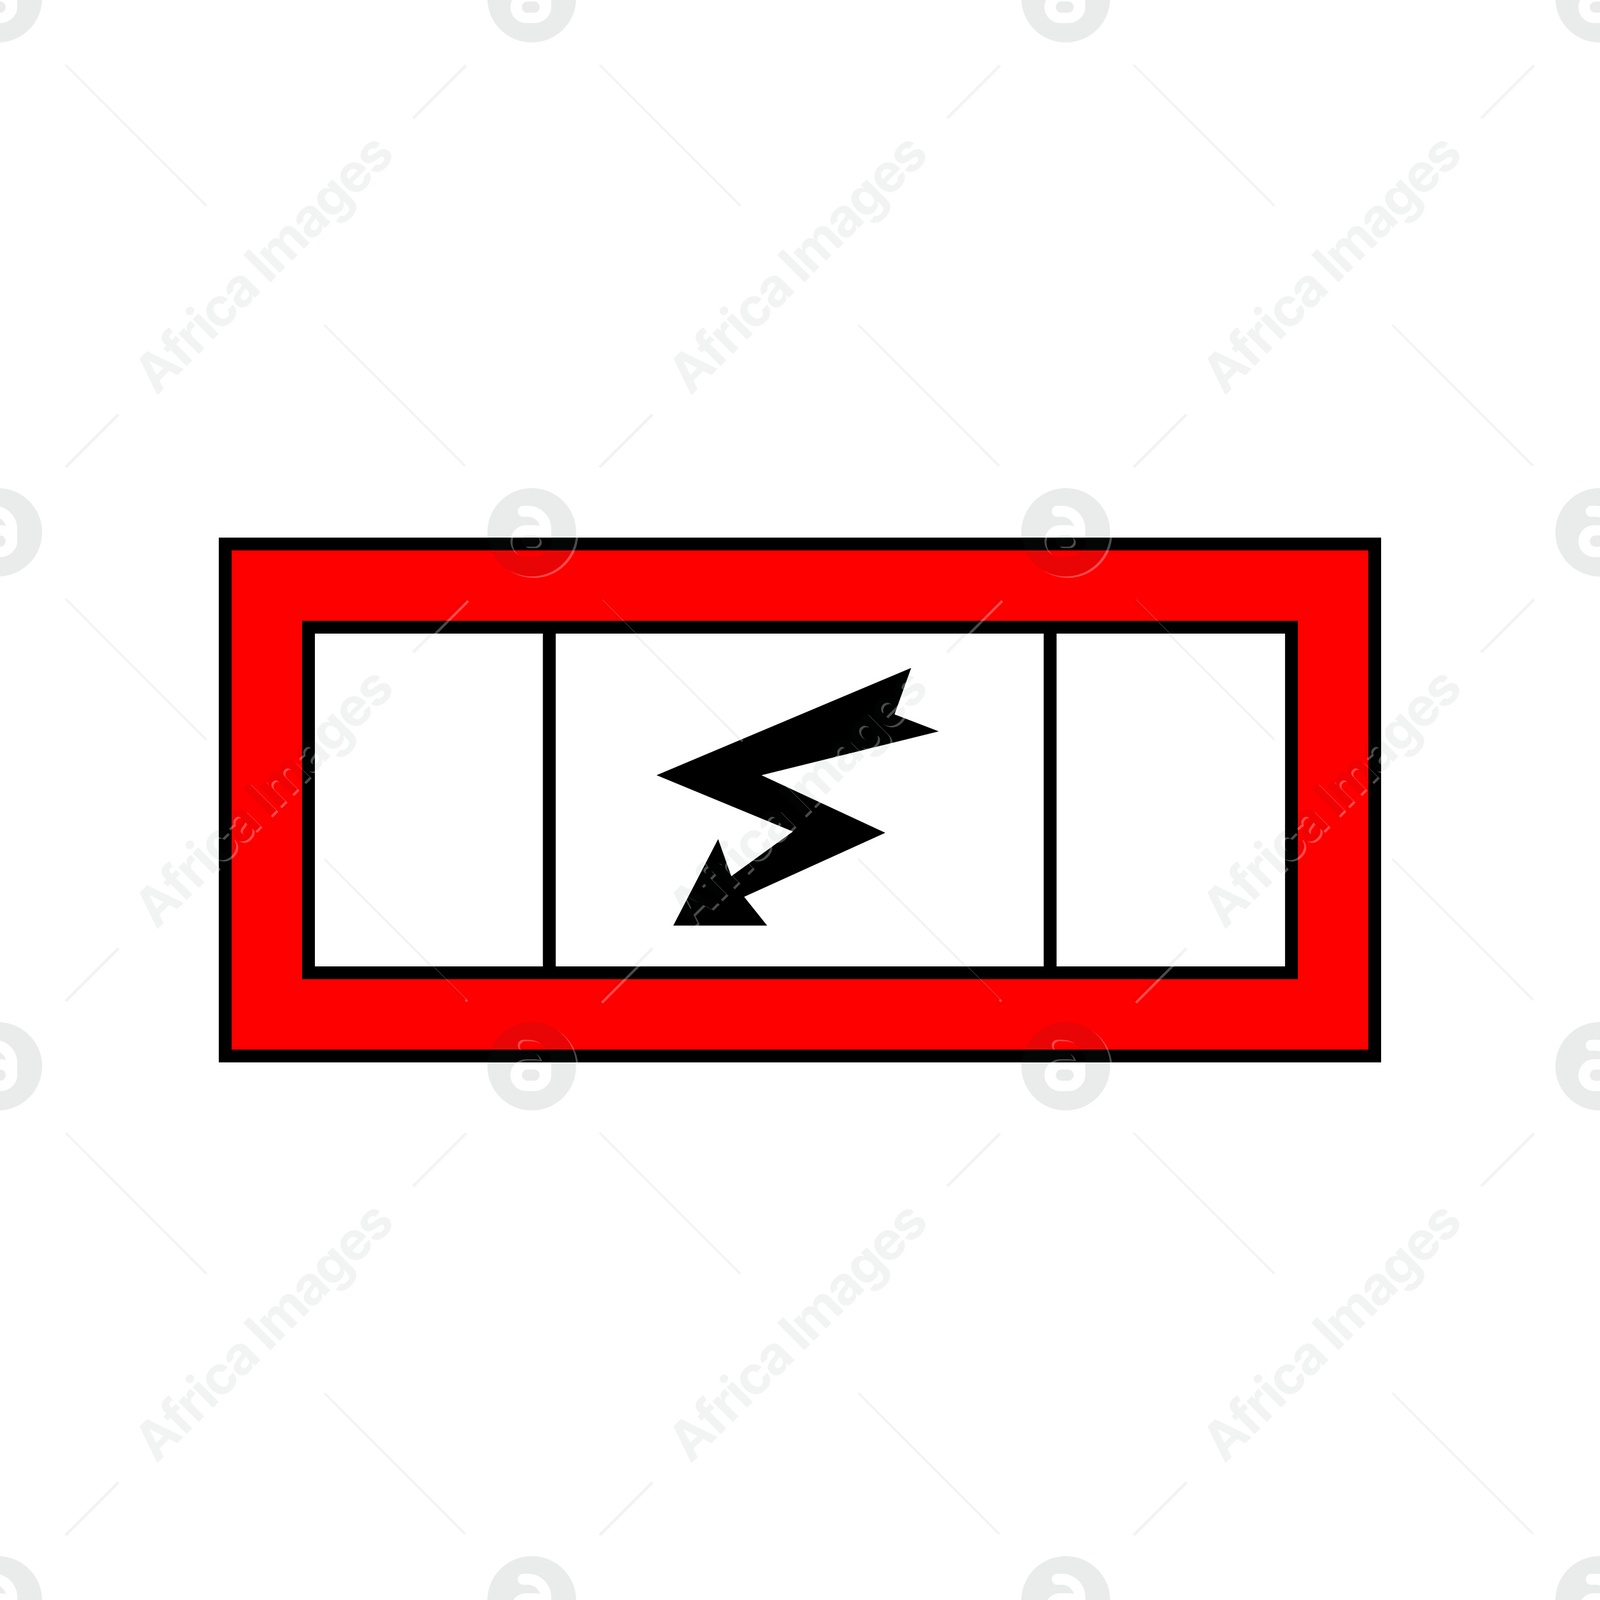 Image of International Maritime Organization (IMO) sign, illustration. Emergency switchboard